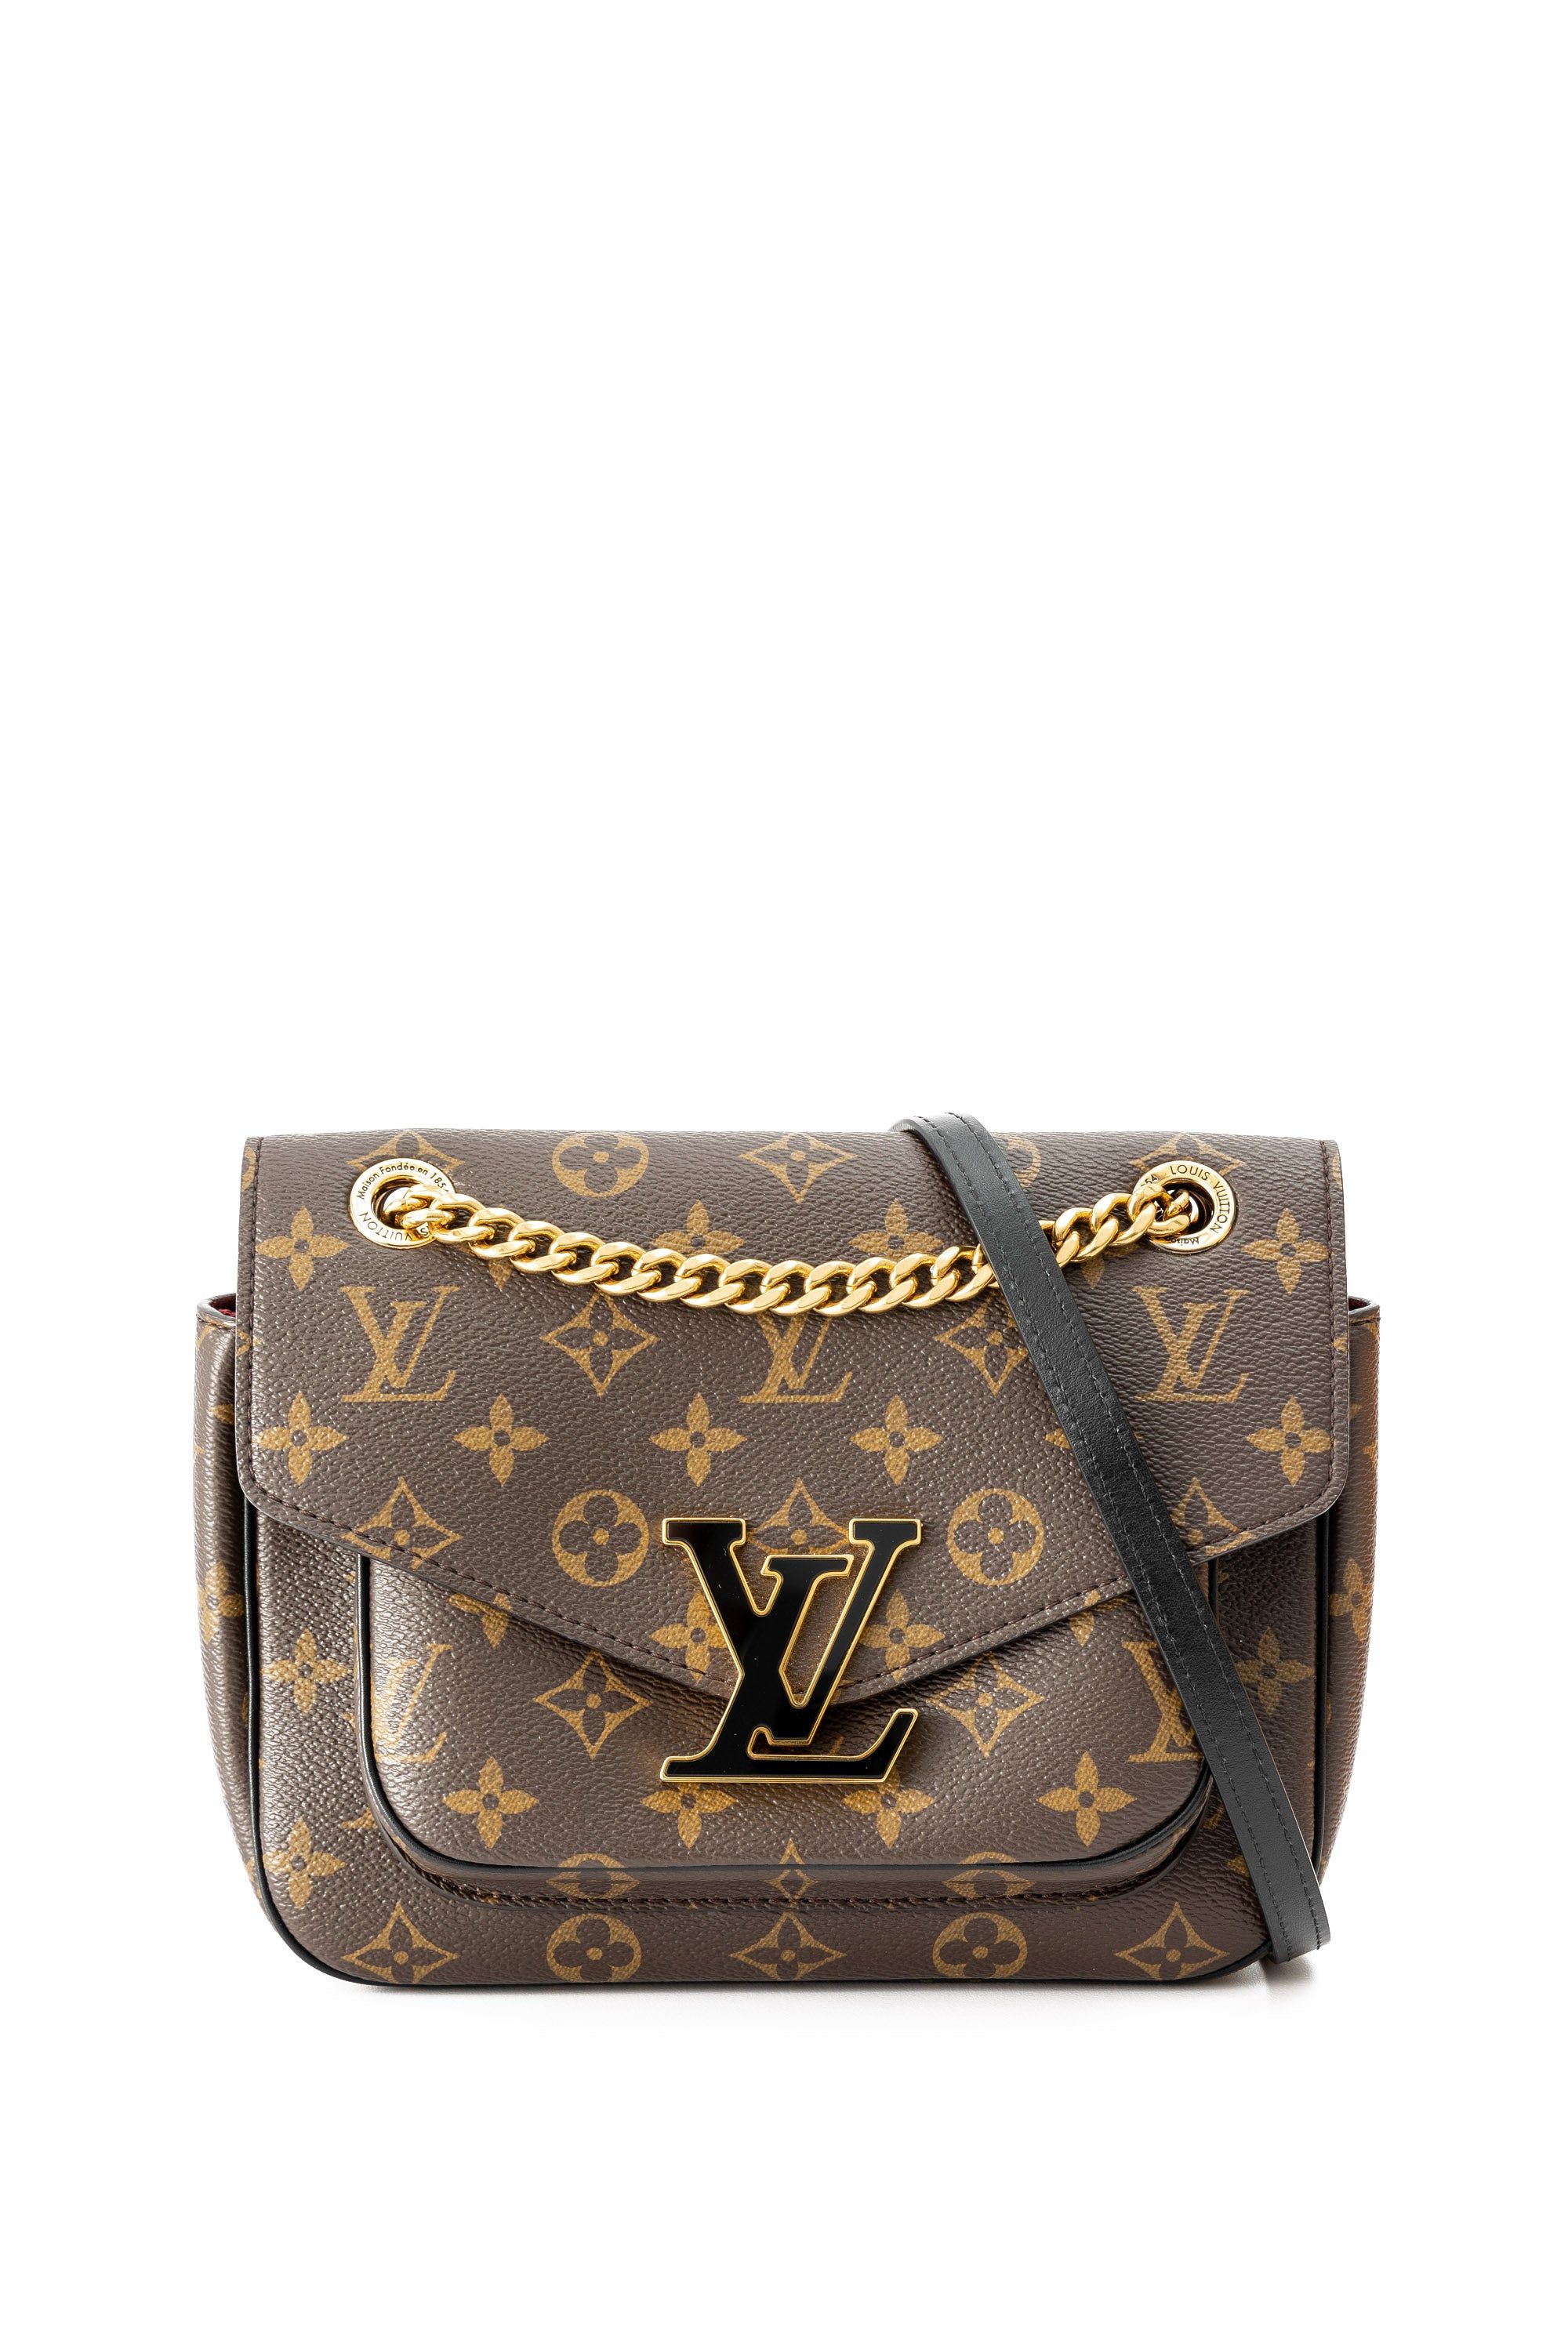 Louis Vuitton 2021 Monogram Passy - Brown Shoulder Bags, Handbags